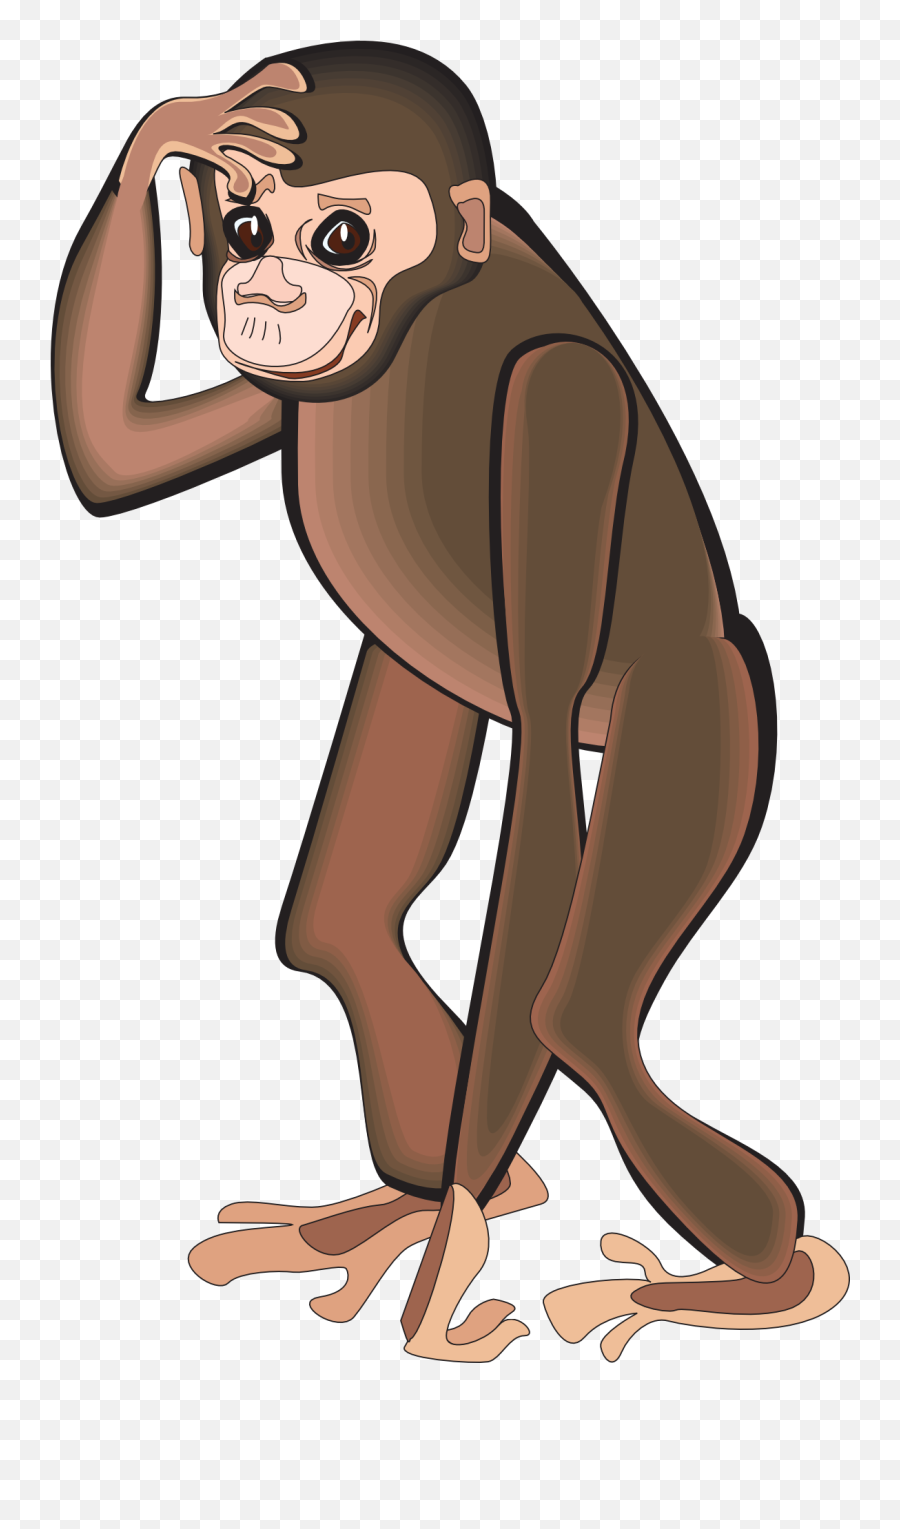 Standing Chimpanzee Free Image Emoji,Chimp Png